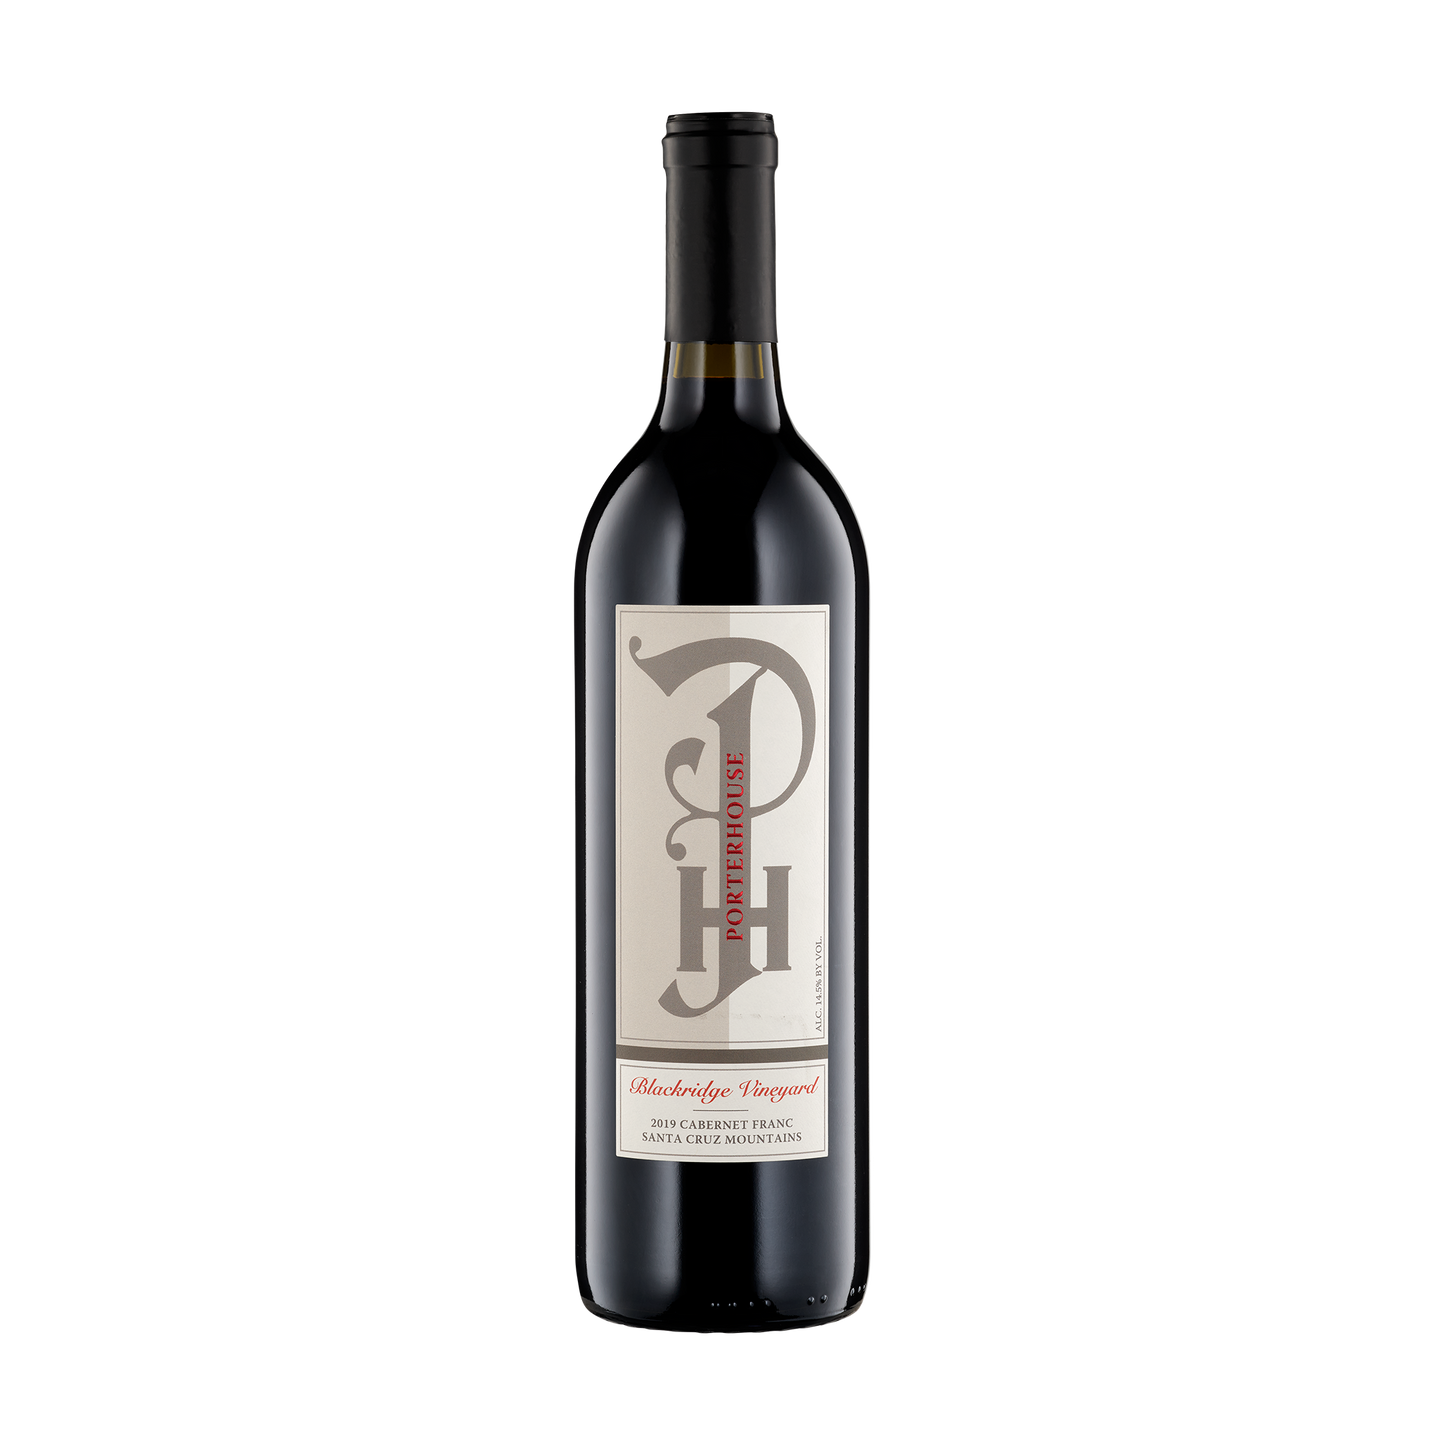 A bottle of Porterhouse Winery 2019 Cabernet Franc Blackridge Vineyard